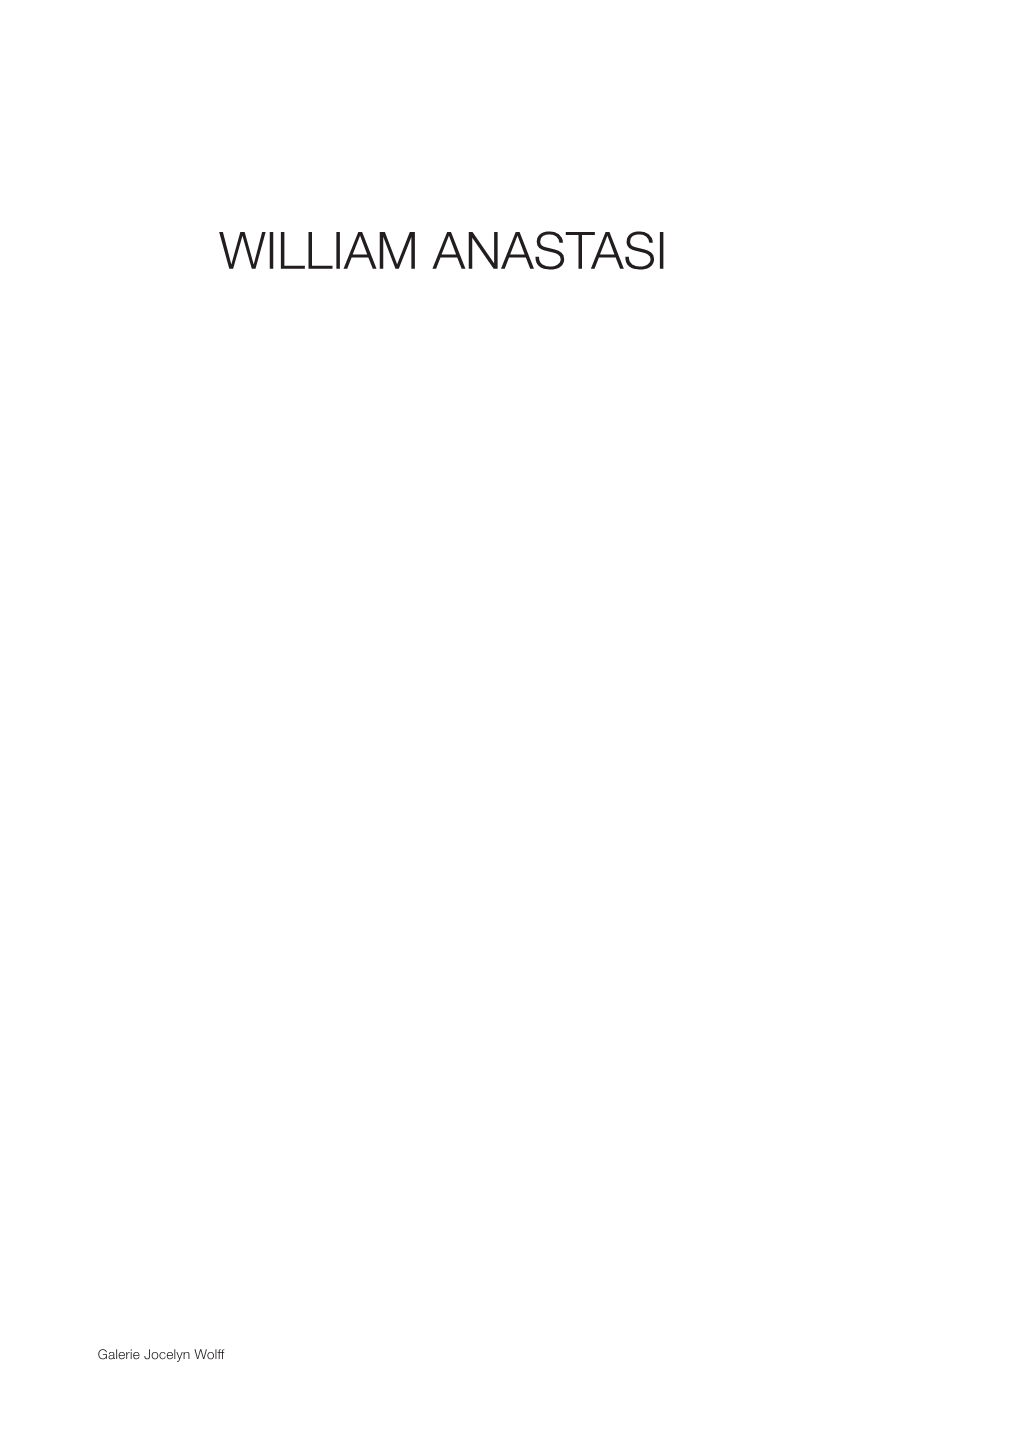 William Anastasi